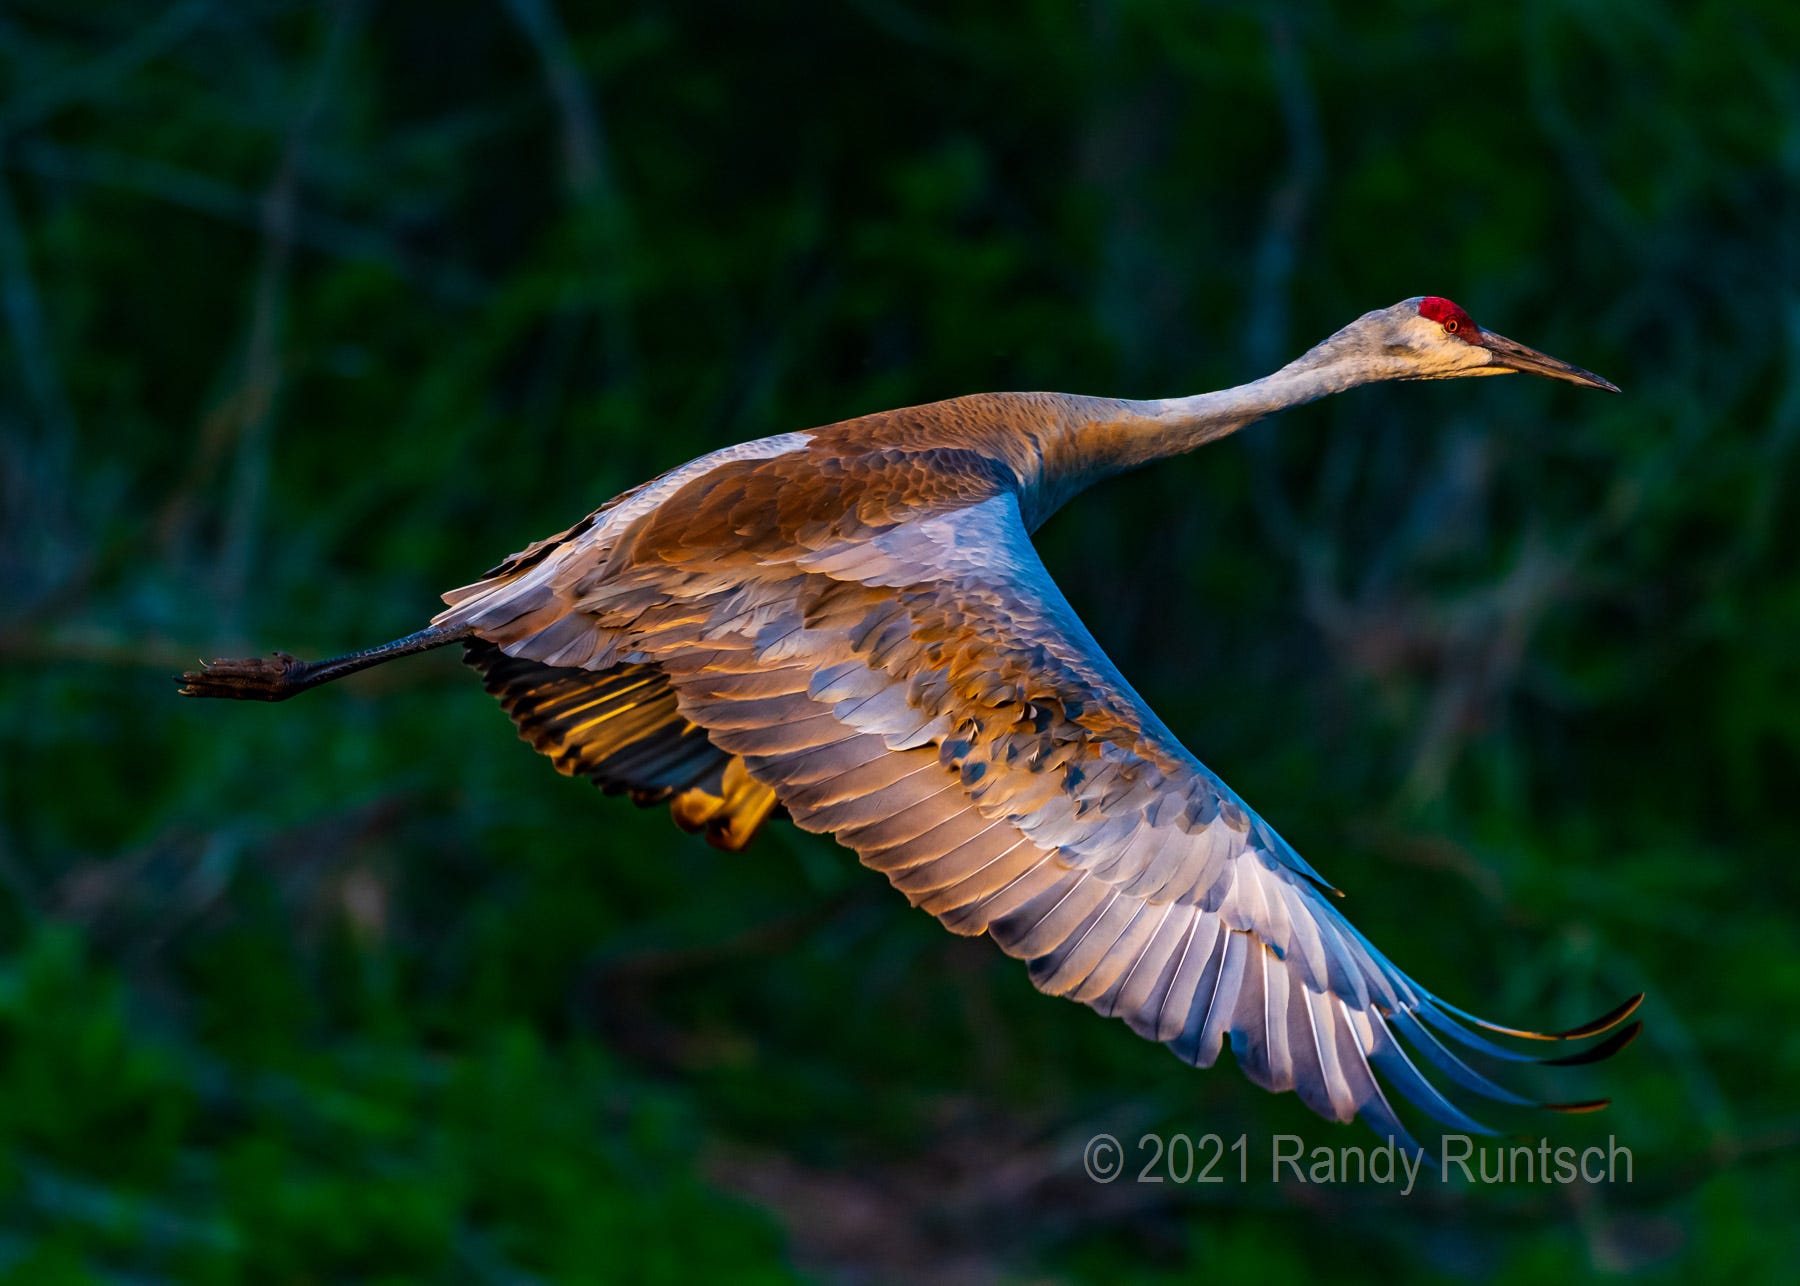 Bird Photography 101 — Carry a Big Lens | by Randy Runtsch